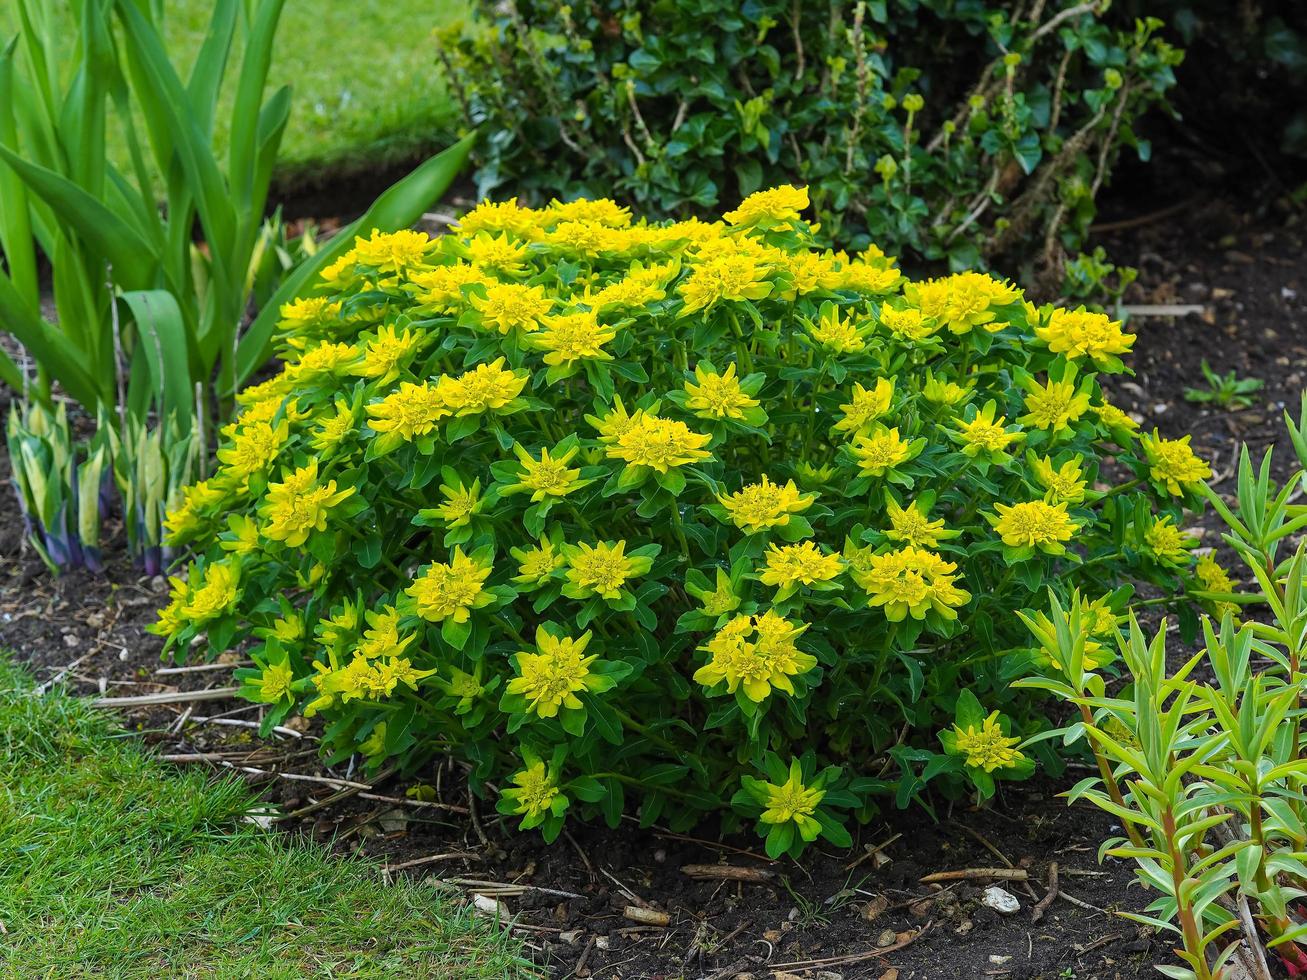 Plante euphorbe jaune compacte floraison dans un jardin photo